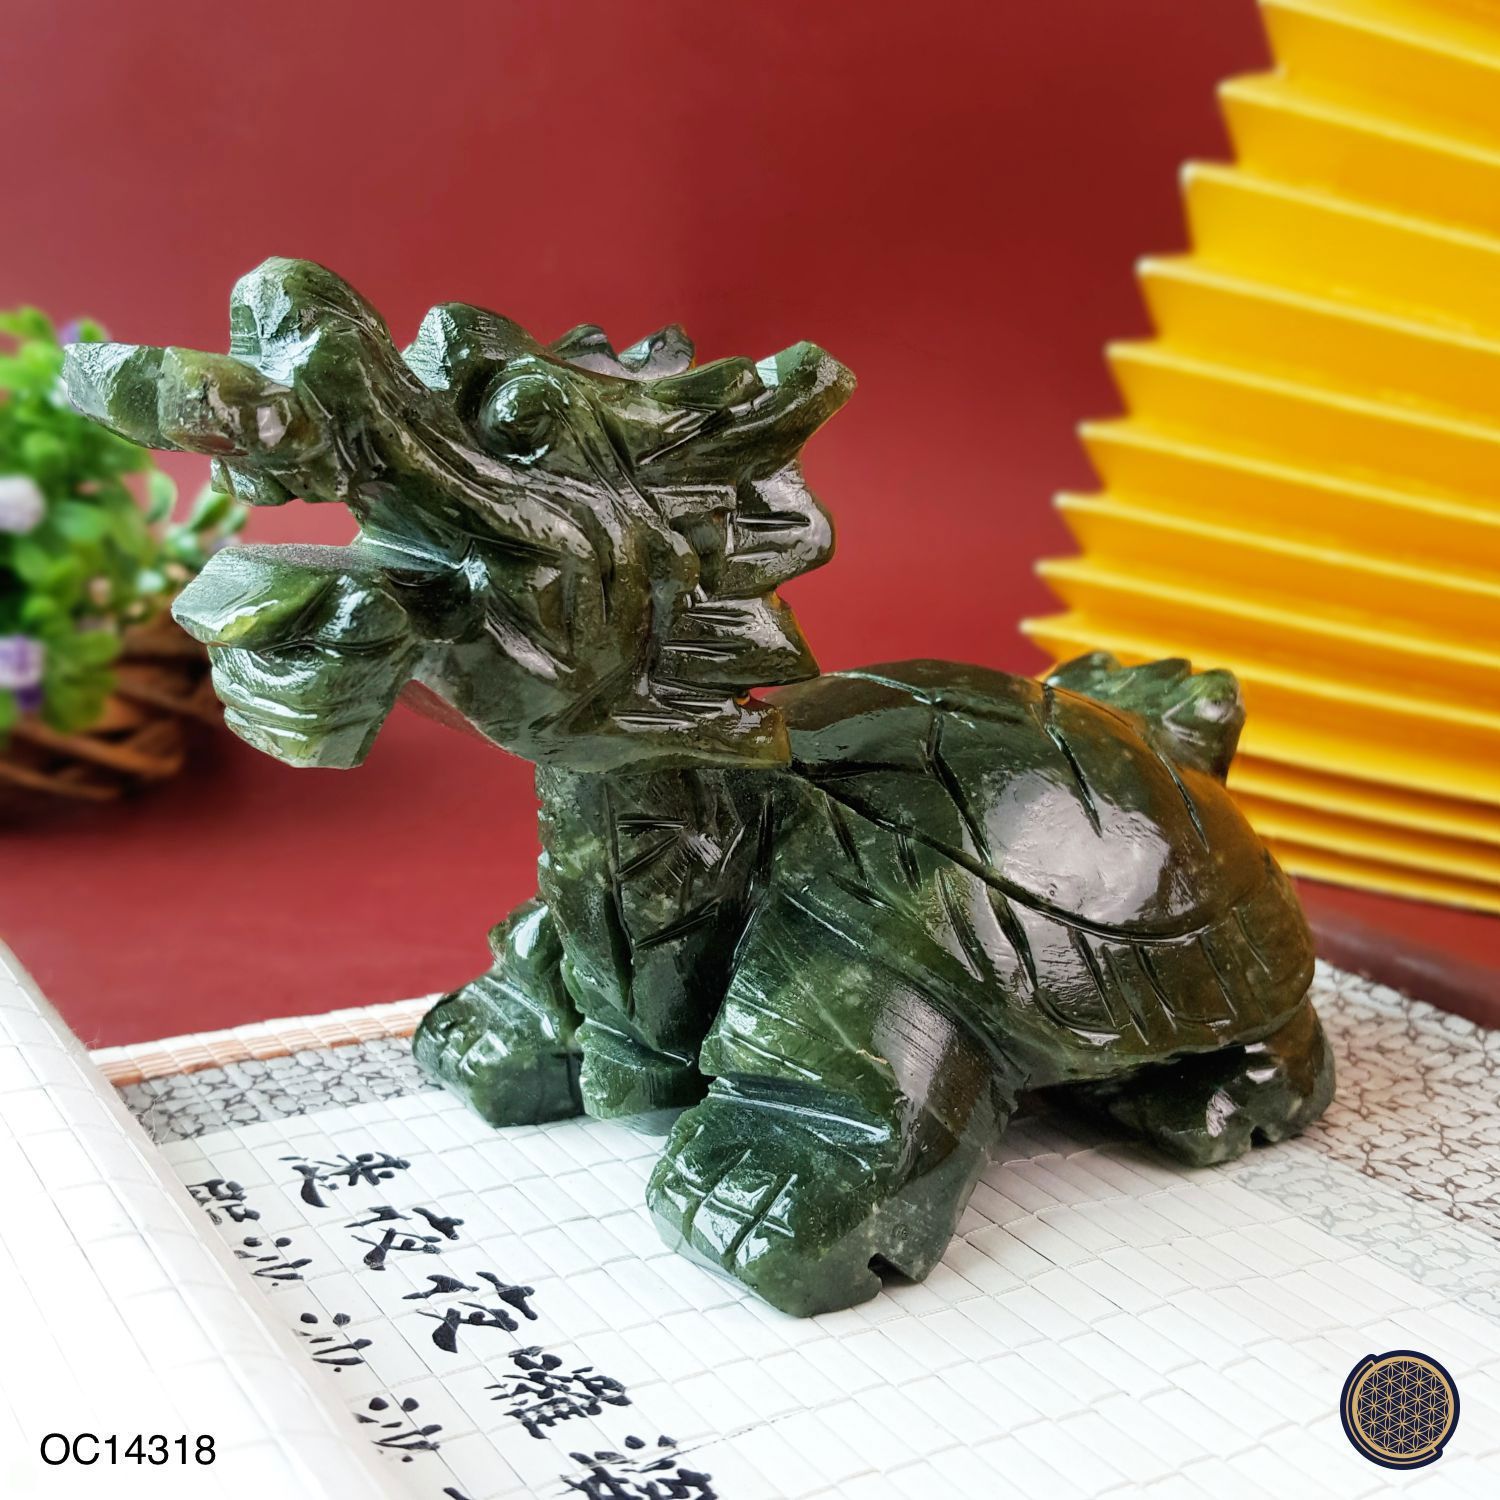 127mm x 85mm Green Jasper Dragon Turtle Decoration